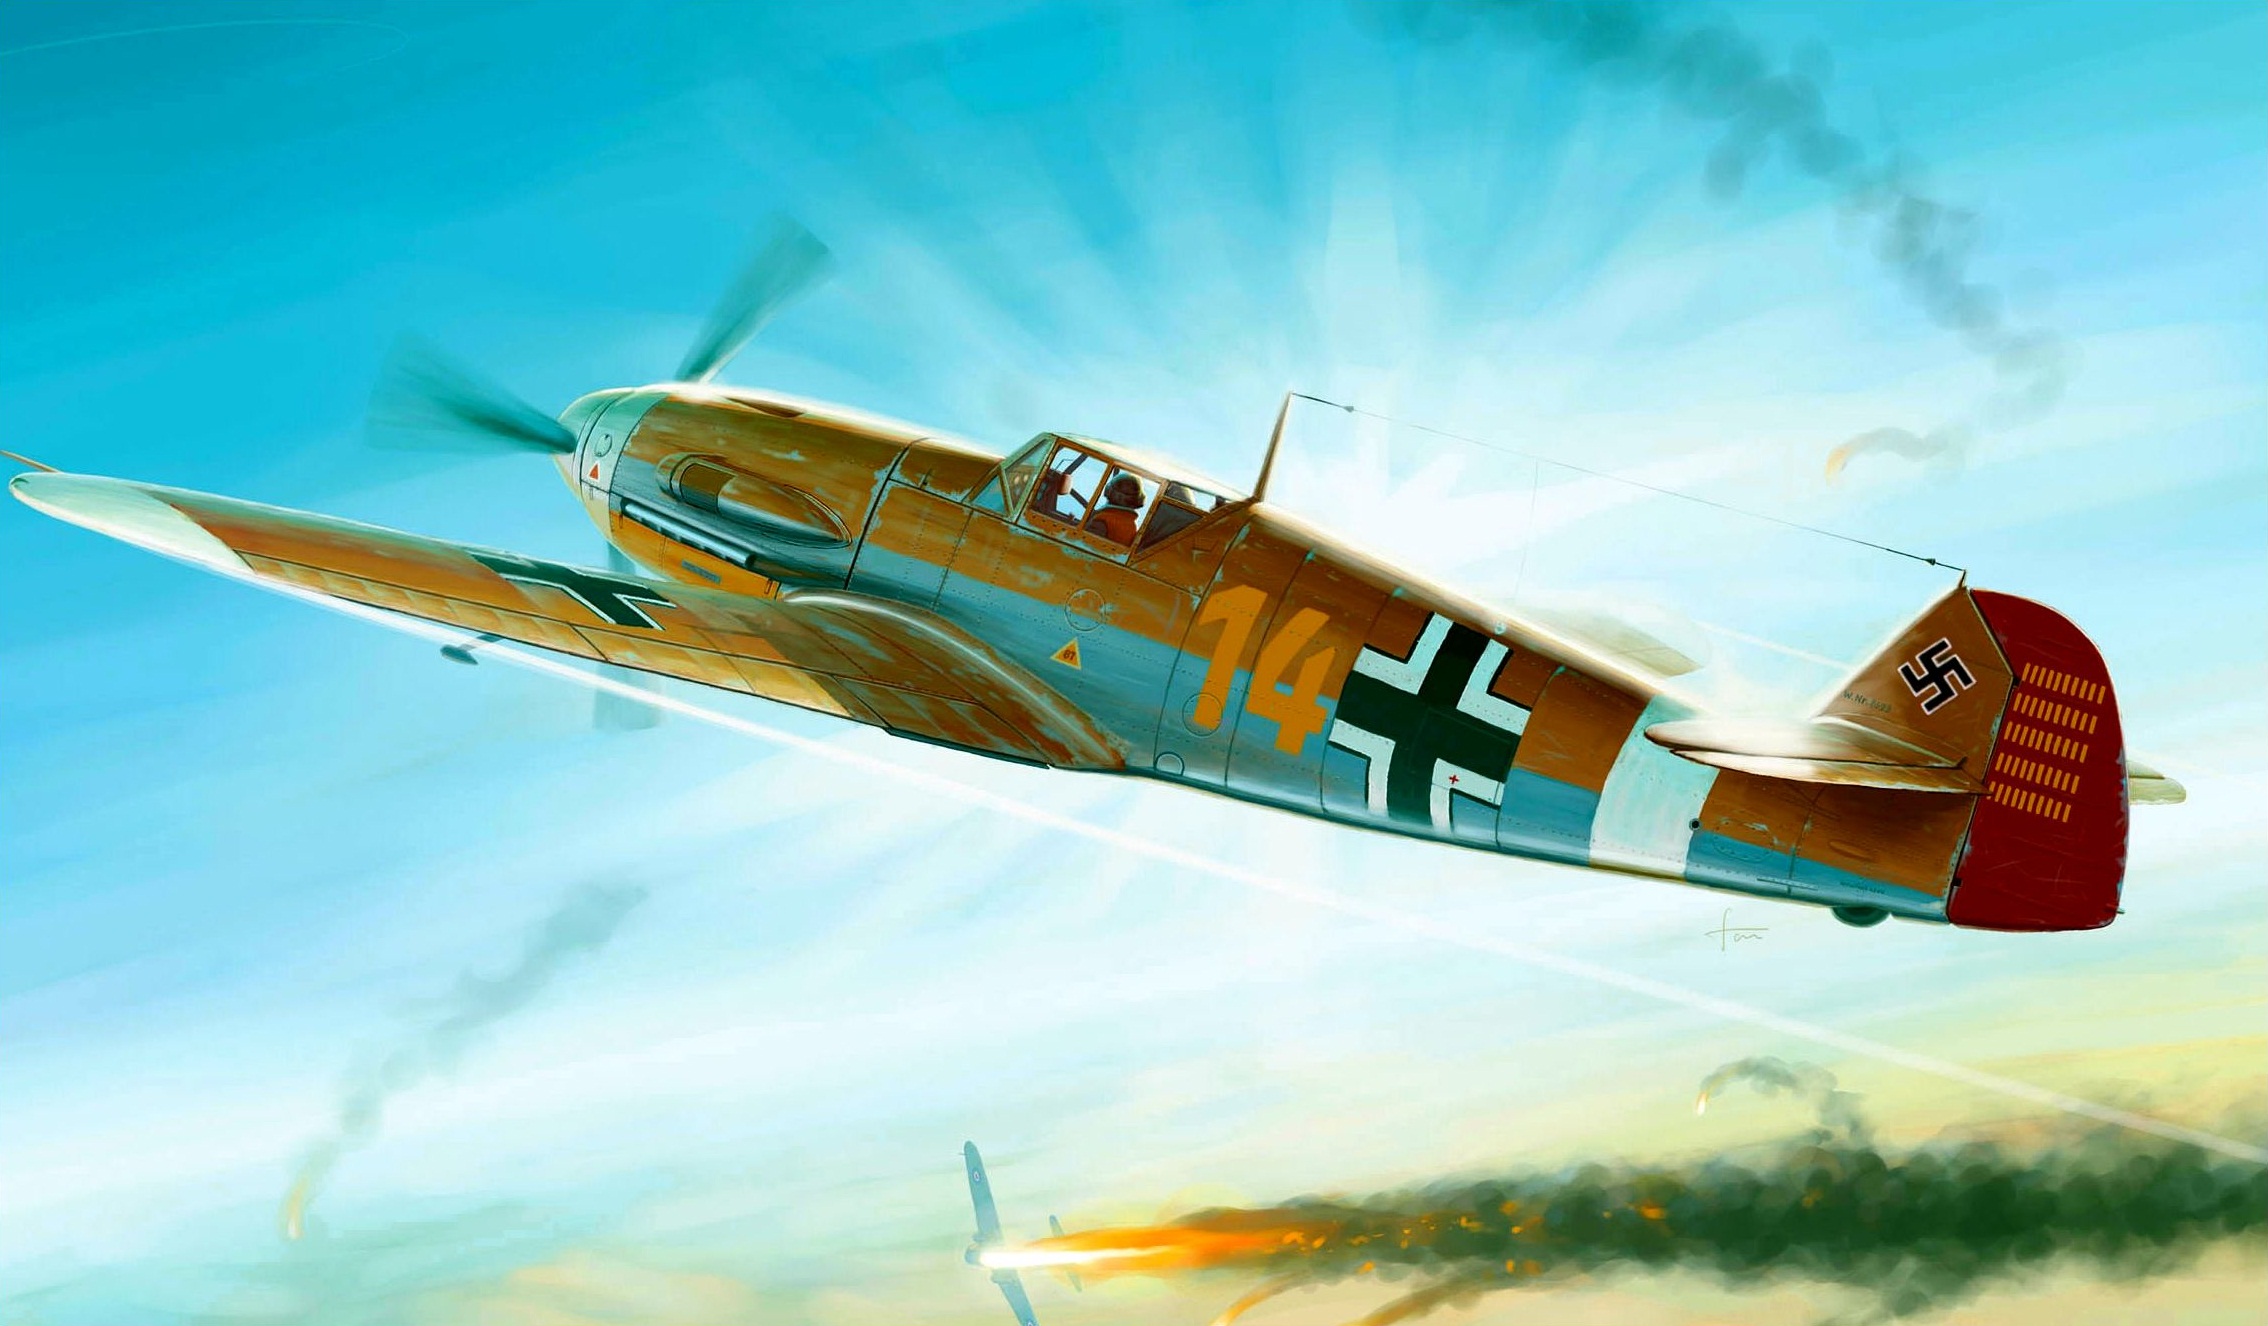 General 2268x1326 World War II airplane painting Messerschmitt Bf 109 military military aircraft Luftwaffe German aircraft Messerschmitt